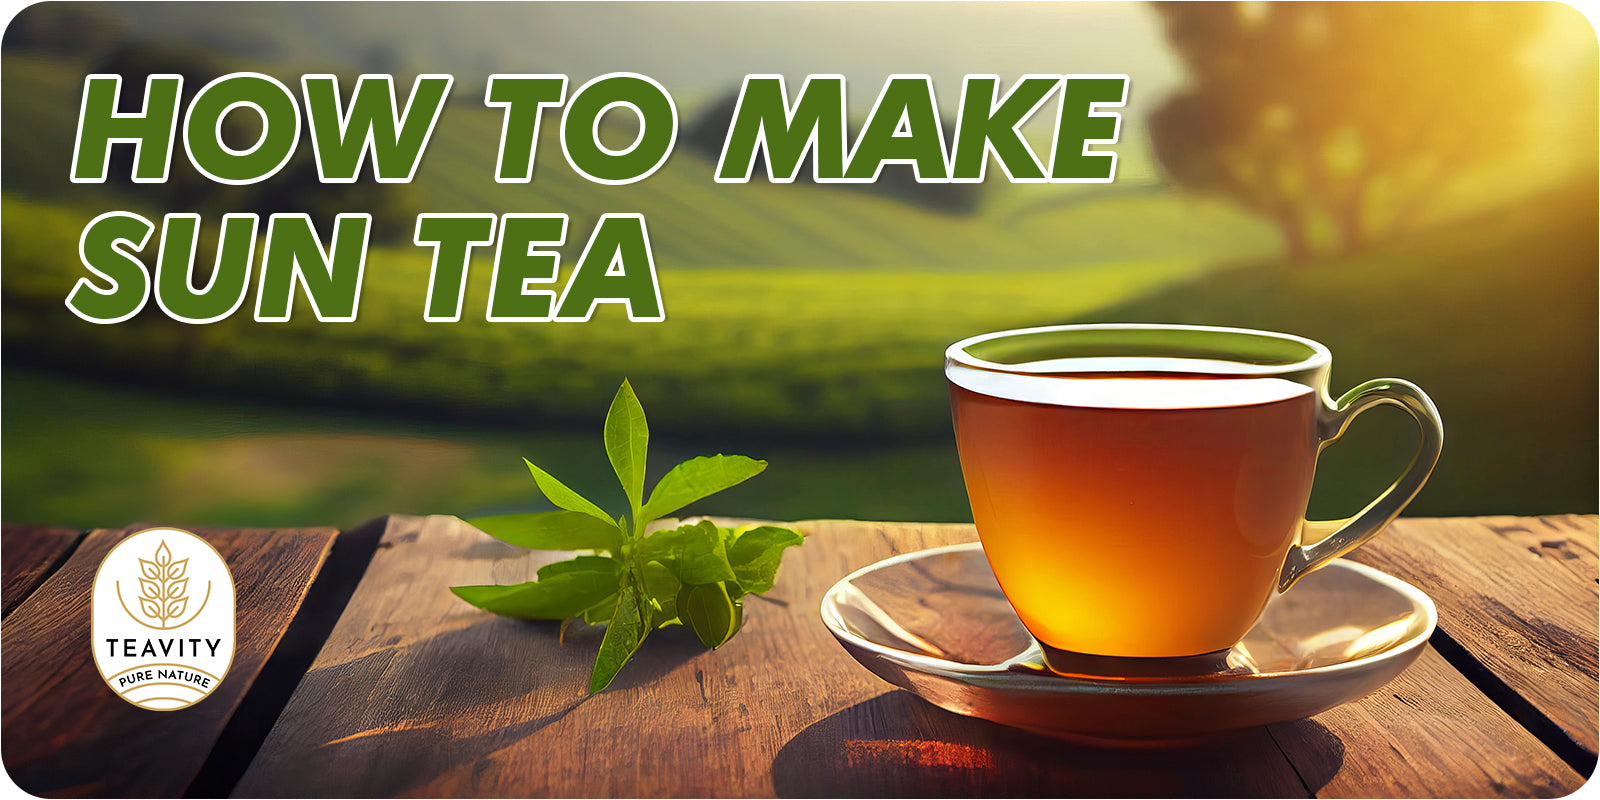 How to Make Sun Tea?